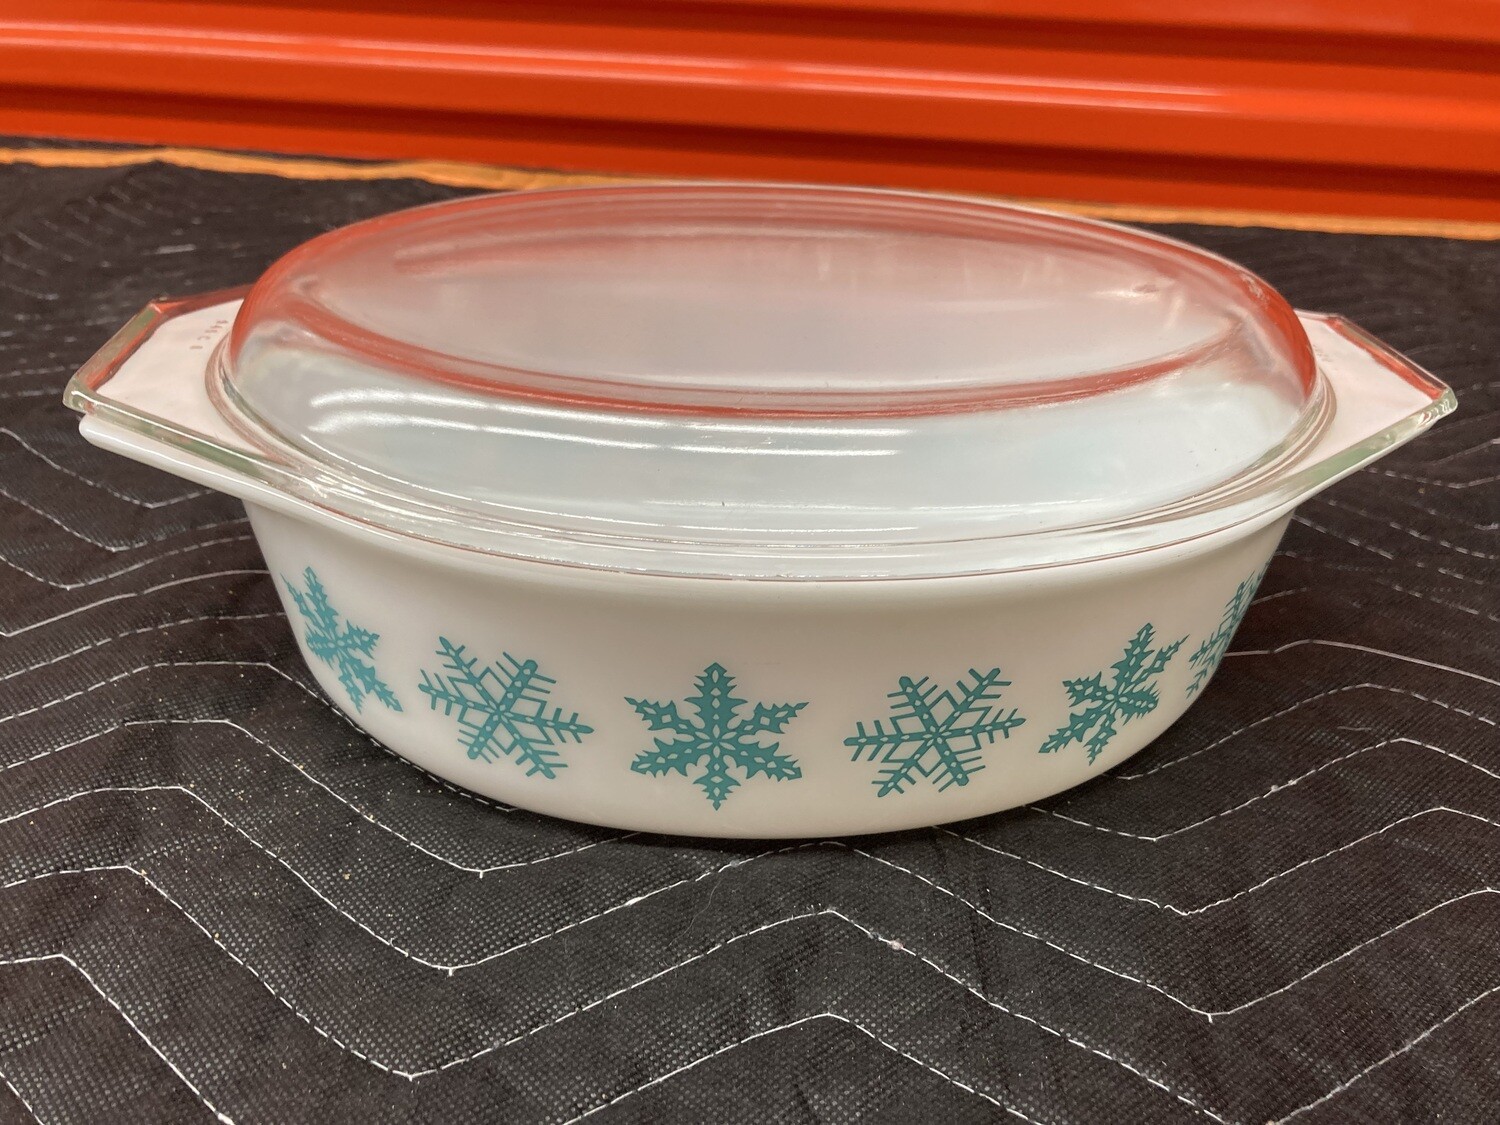 Vintage, Rare! Pyrex Turquoise 2 quart casserole "Snowflake" #2314